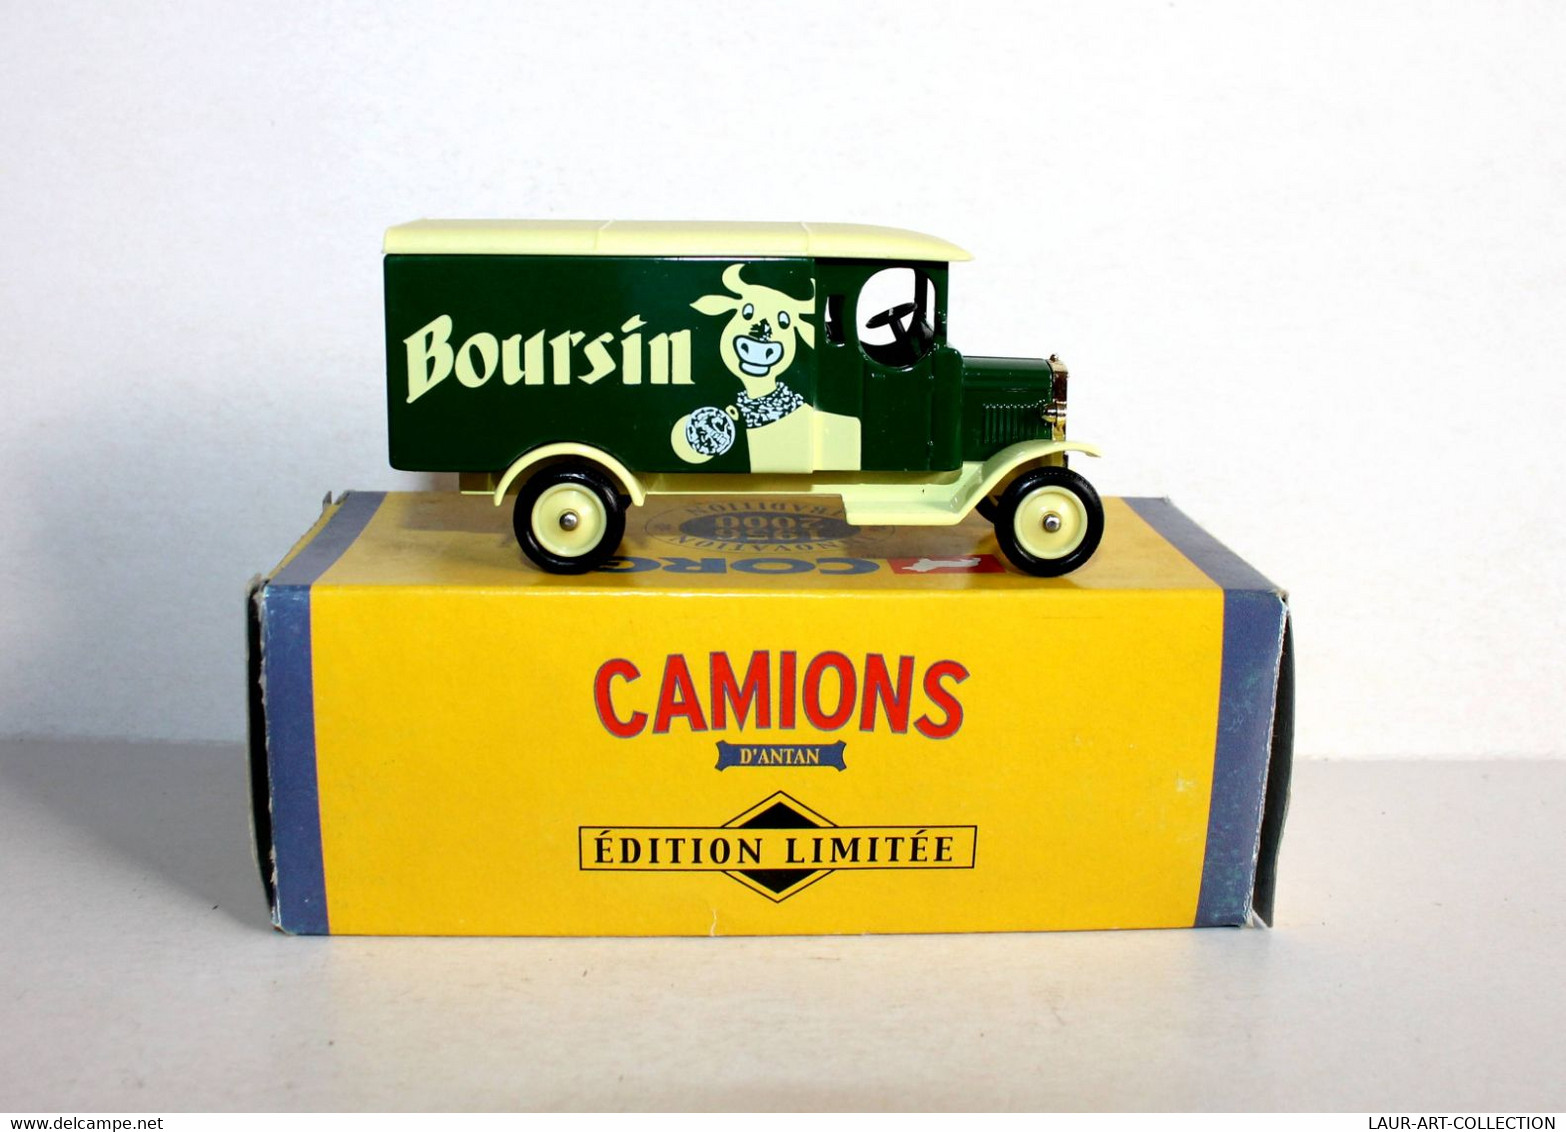 CORGI - CAMIONNETTE LIVRAISON MORRIS VAN, PUB BOURSIN - CAMION D'ANTAN 1956-2000 - AUTOMOBILE MINIATURE (2811.36) - Corgi Toys